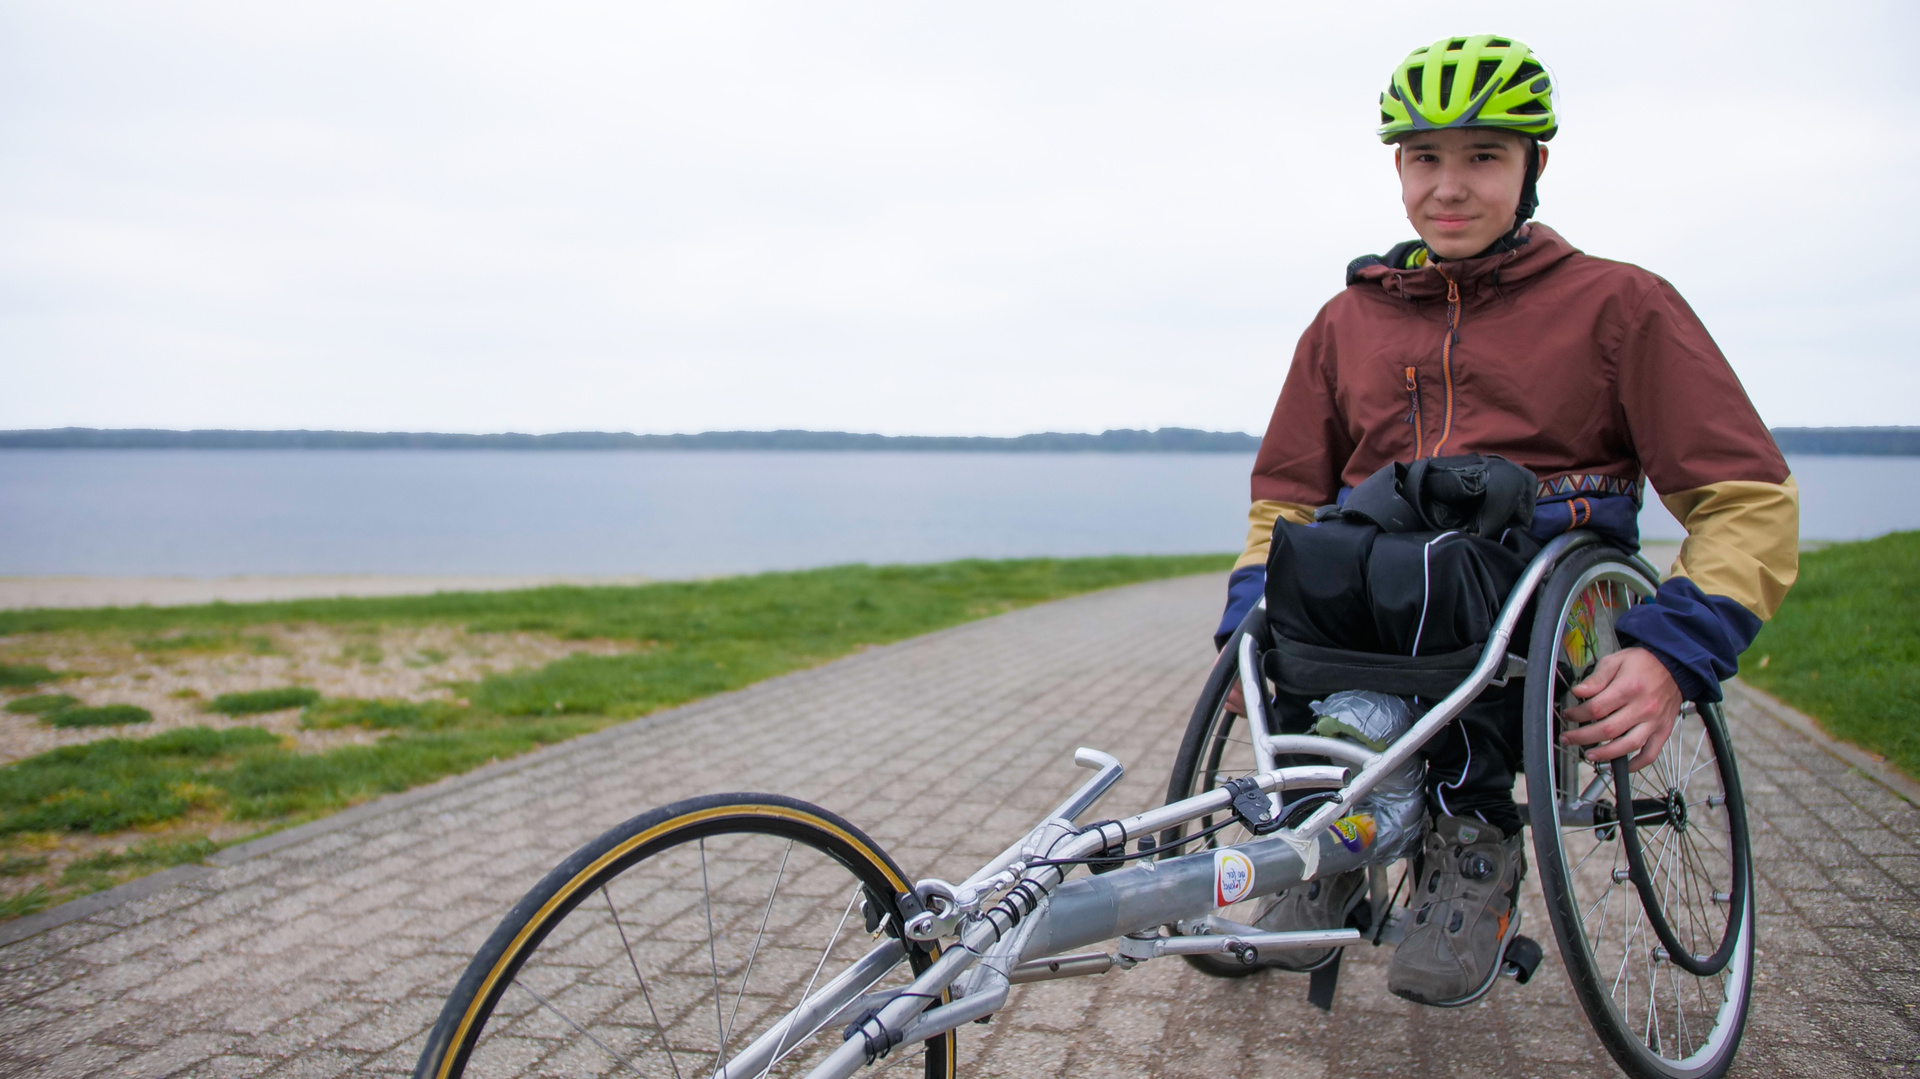 Amos Donath hat einen großen Traum: 2028 will er an den Paralympics teilnehmen. © Honorarfrei nur für diese Sendung inkl. SocialMedia bei Nennung ZDF und Malte Niessen.